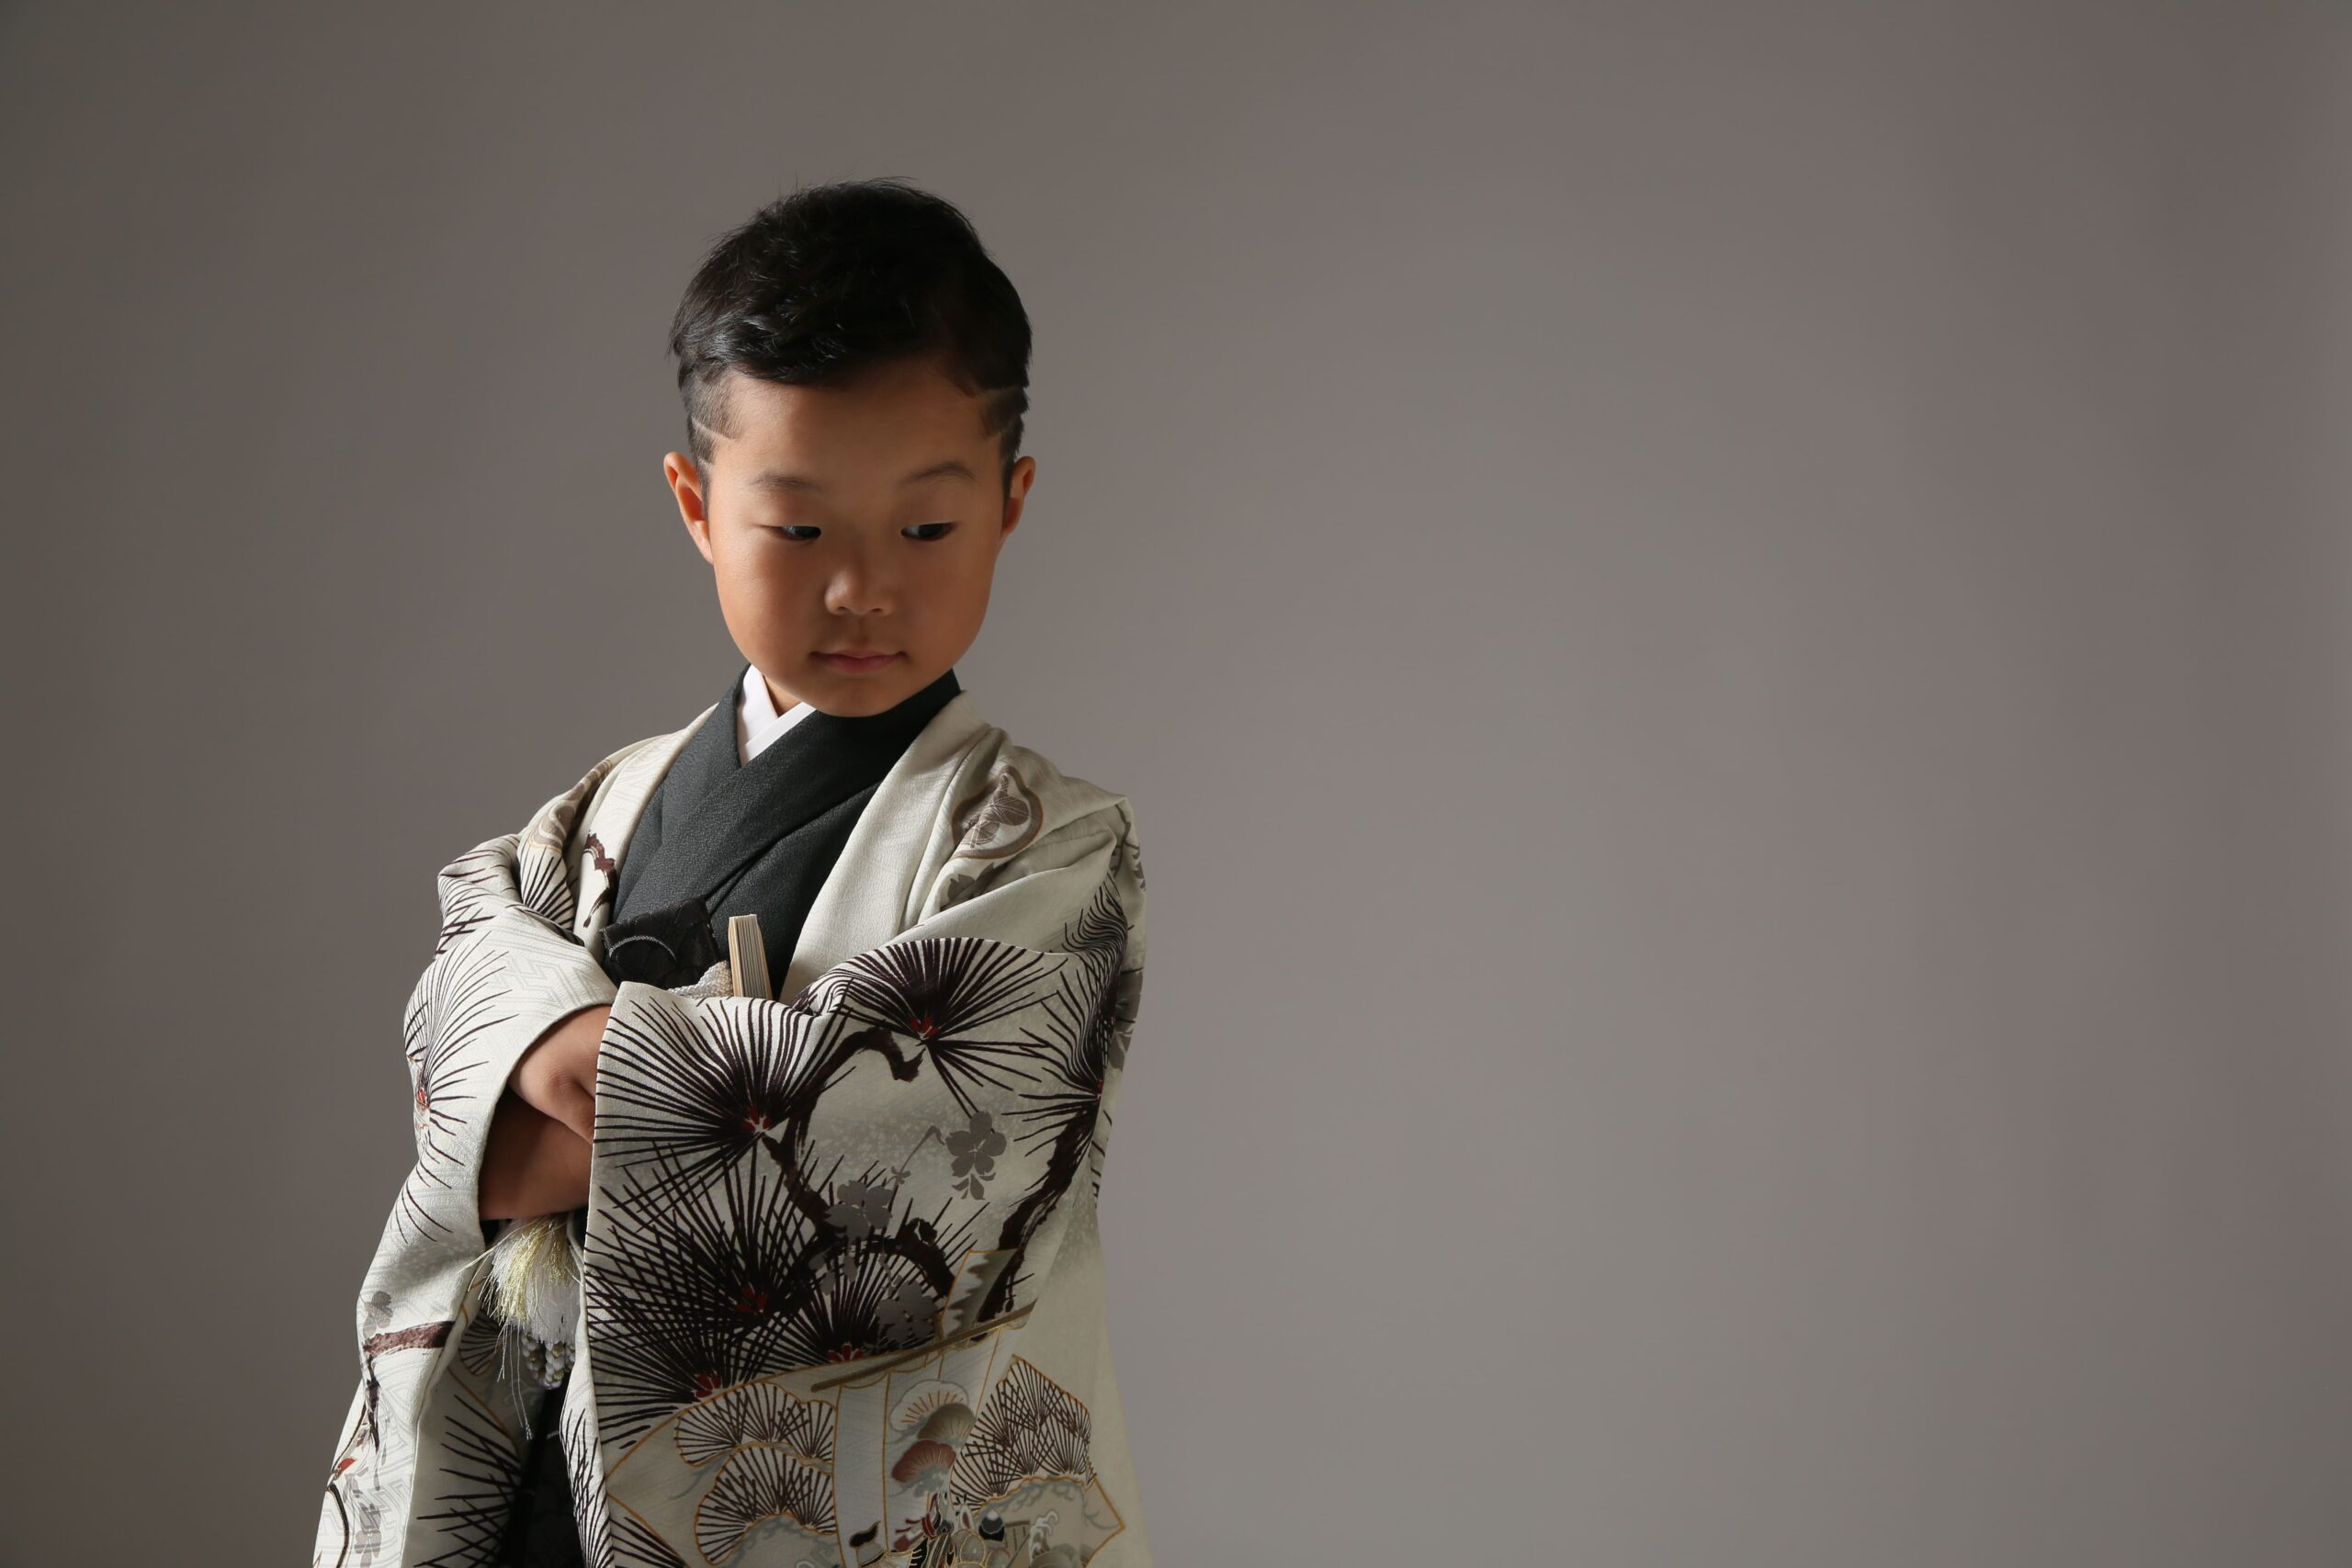 伝統的な紋様からモダンデザインまで、5歳男の子の紋付袴選びのポイントを特集